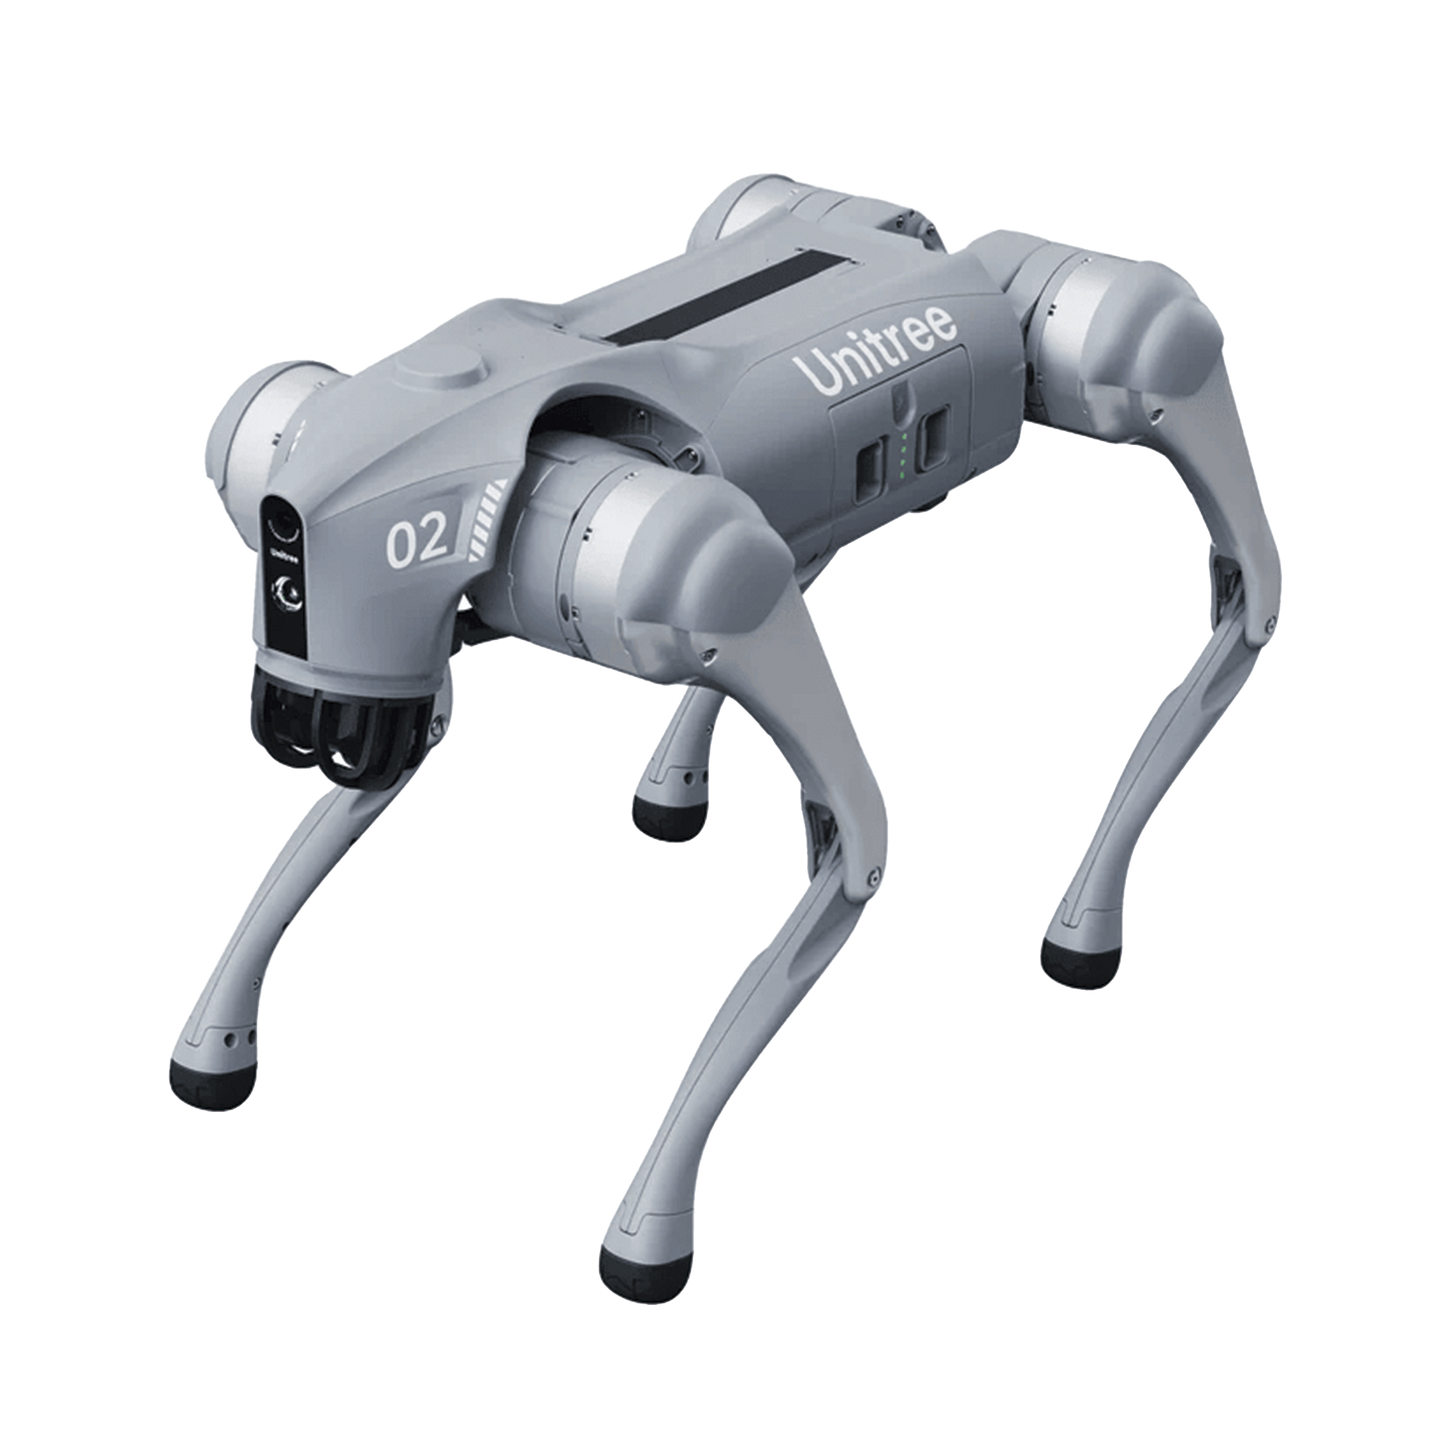 Perro Robot Biónico Para Inspección / Inteligencia Artificial / Reconocimiento De Humanos / Incluye 1 Control Remoto / Tareas Programadas / Cámara Integrada